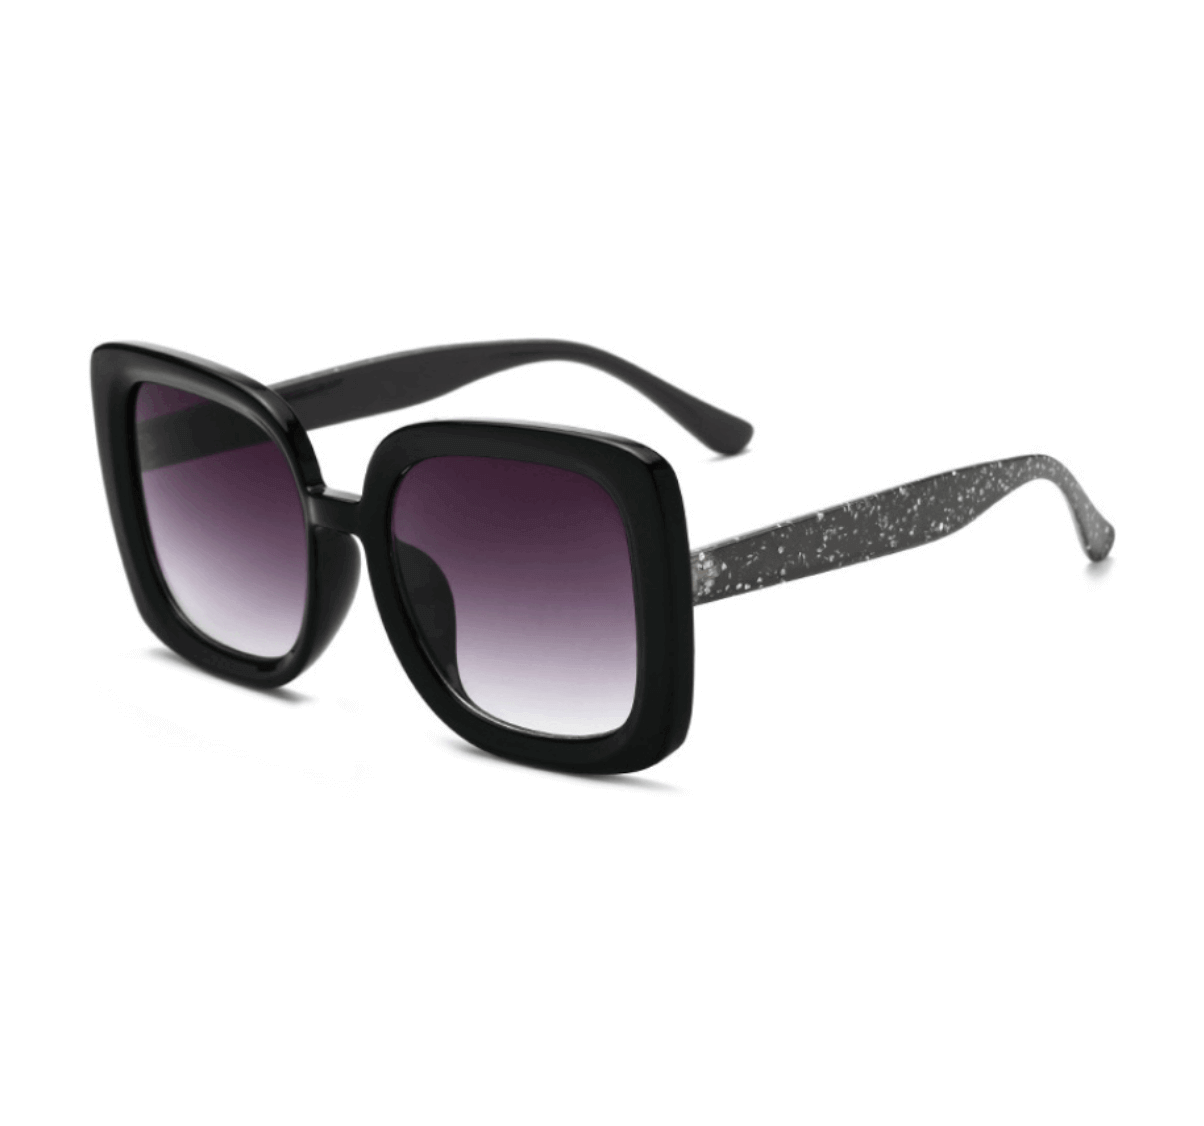 Custom Plastic Sunglasses from China - Custom Sunglasses Manufacturer - Custom Eyewear Manufacturers in China